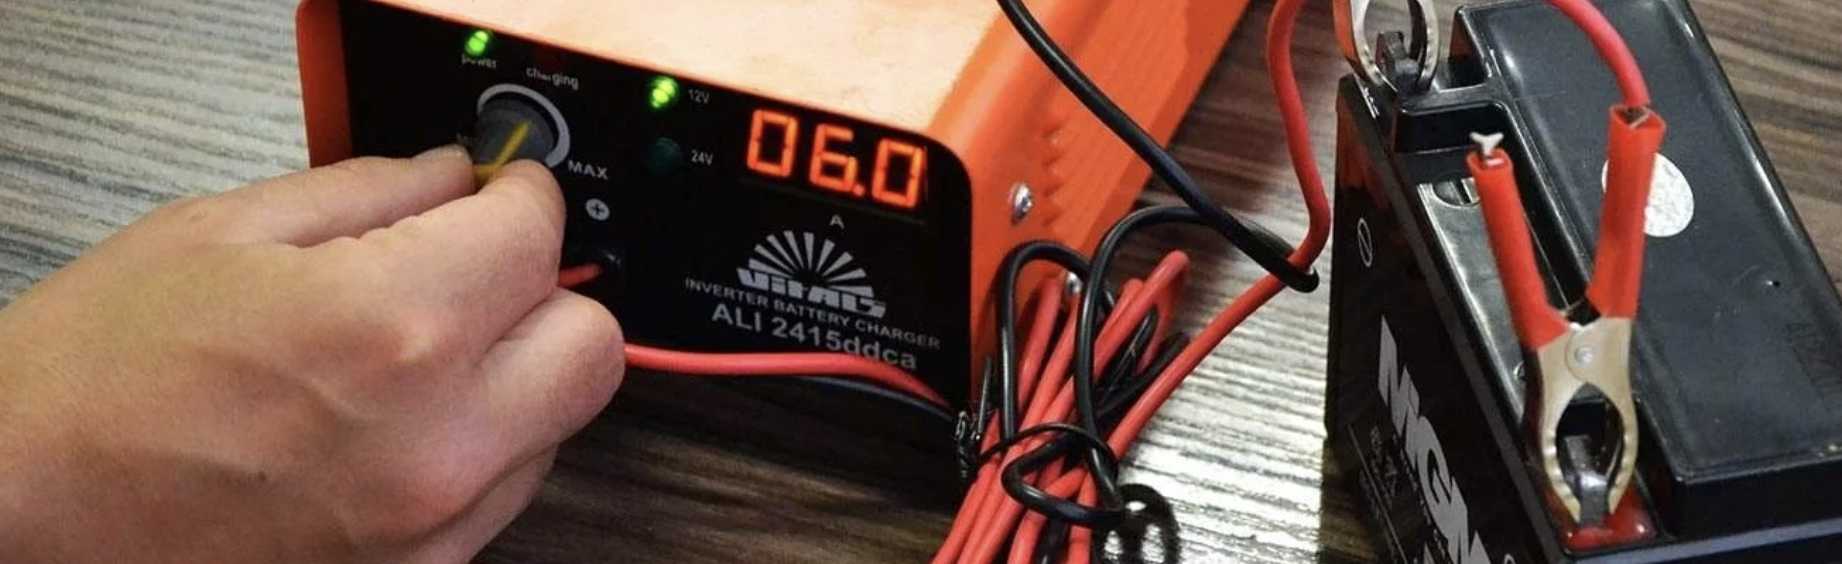 Как зарядить гелевый аккумулятор: можно ли обычным зарядным устройством на 12 вольт, для мотоцикла и автомобиля